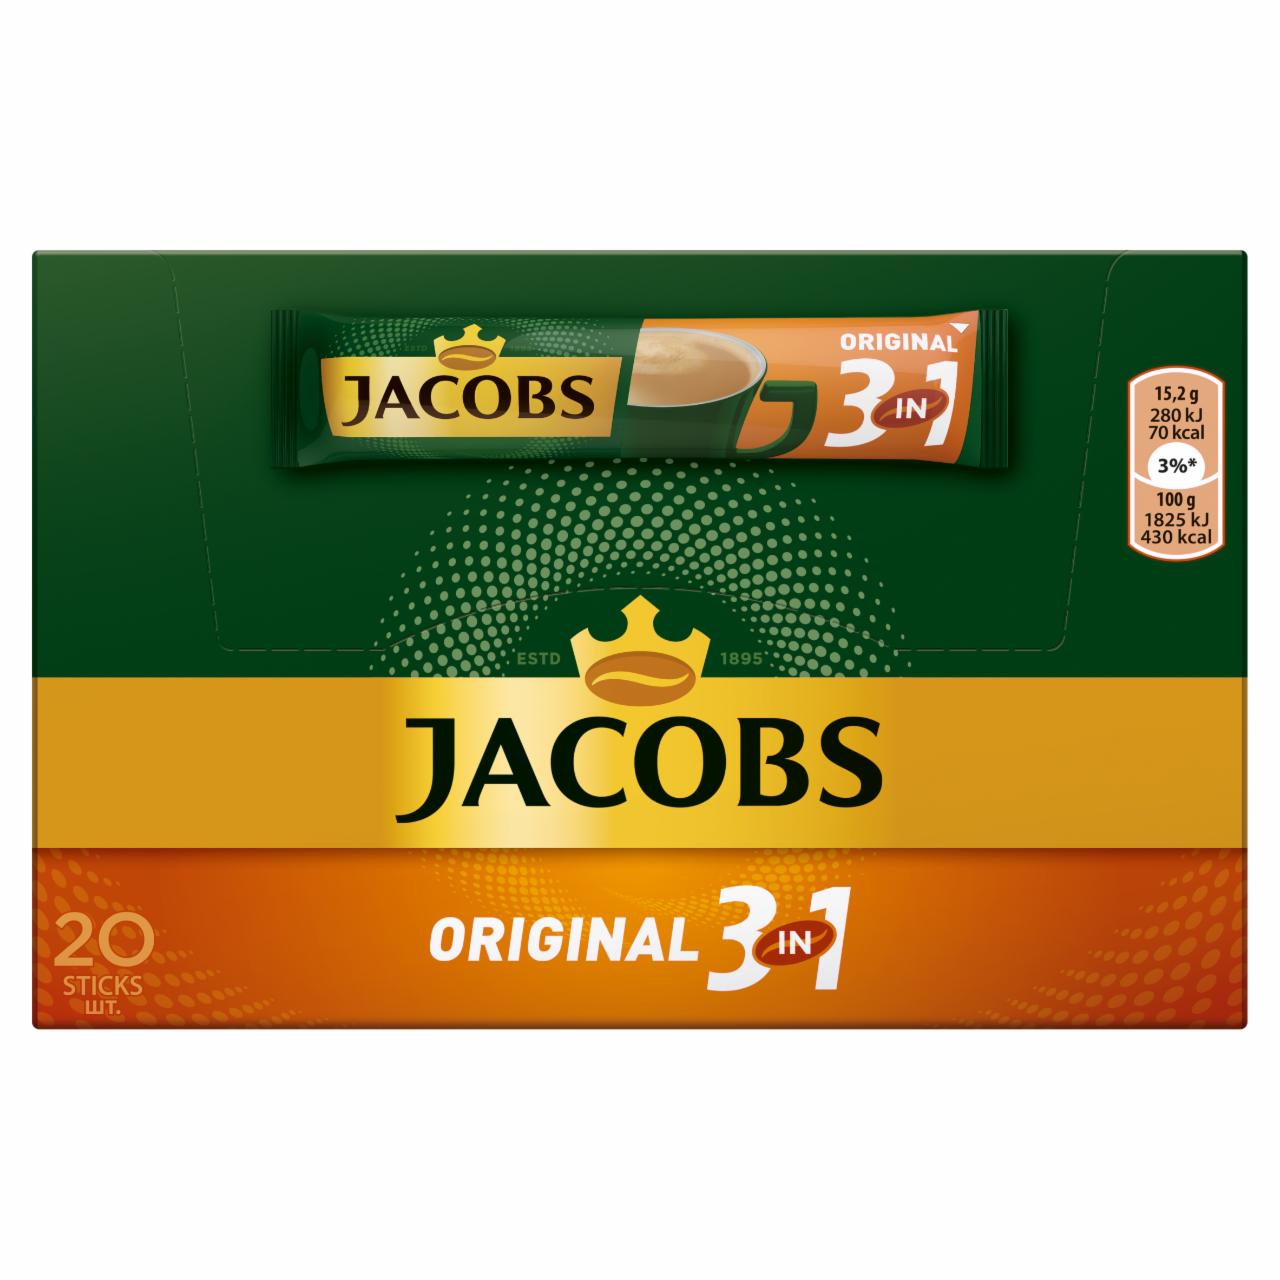 Képek - Jacobs Original 3in1 azonnal oldódó kávéitalpor cukorral, kávéfehérítővel 20 db 304 g